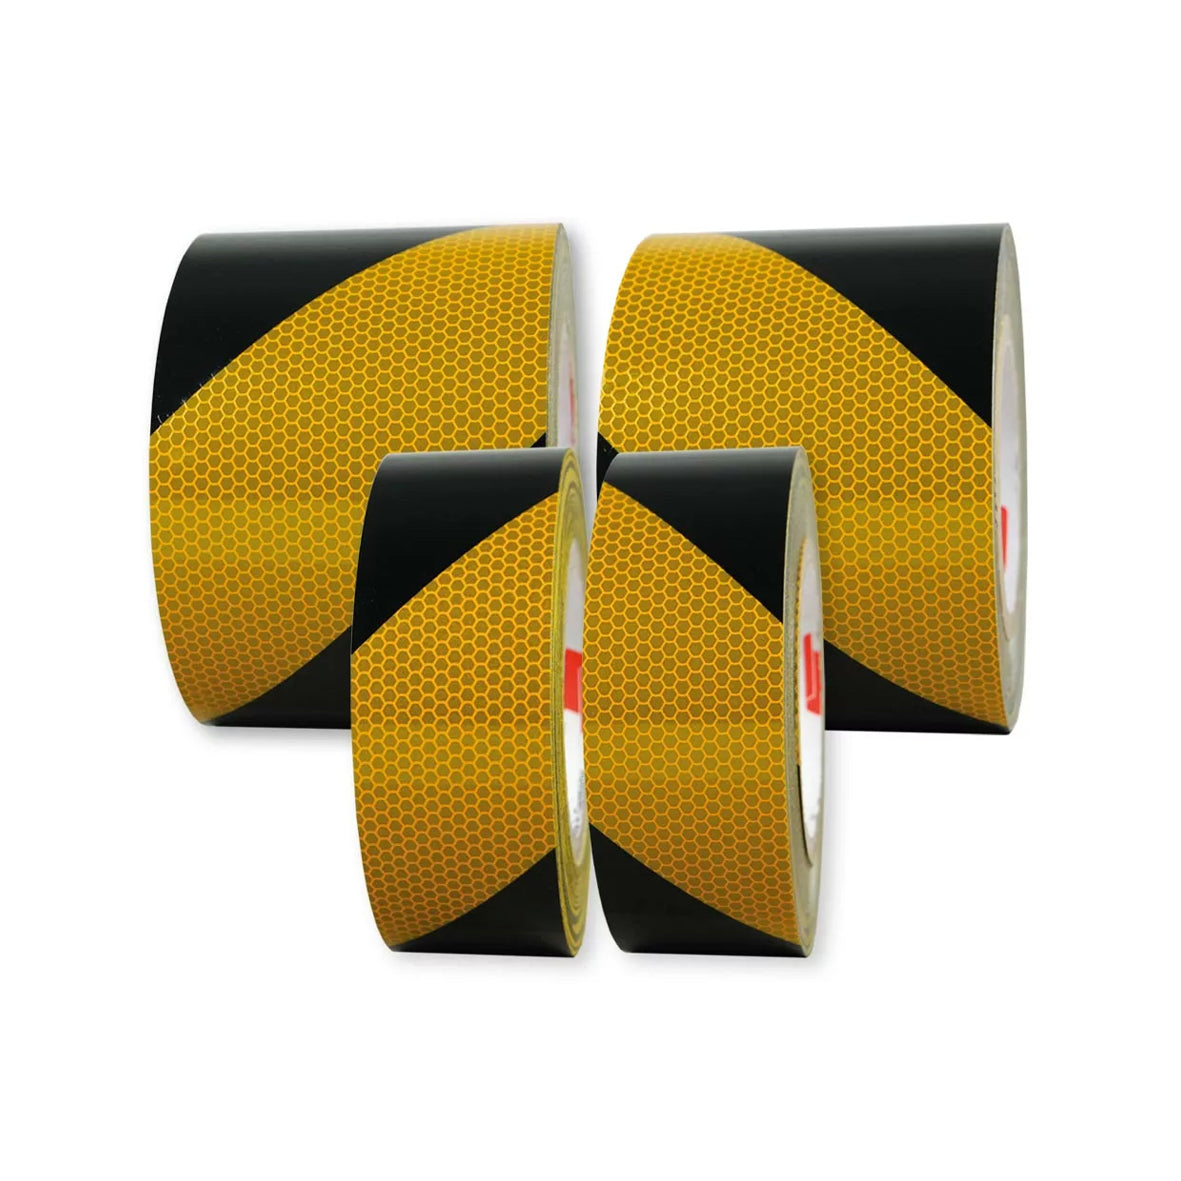 Warnmarkierungsband R2, für Fahrzeuge, R2, gelb-schwarz, 25 m x 100 mm, rechtsweisend